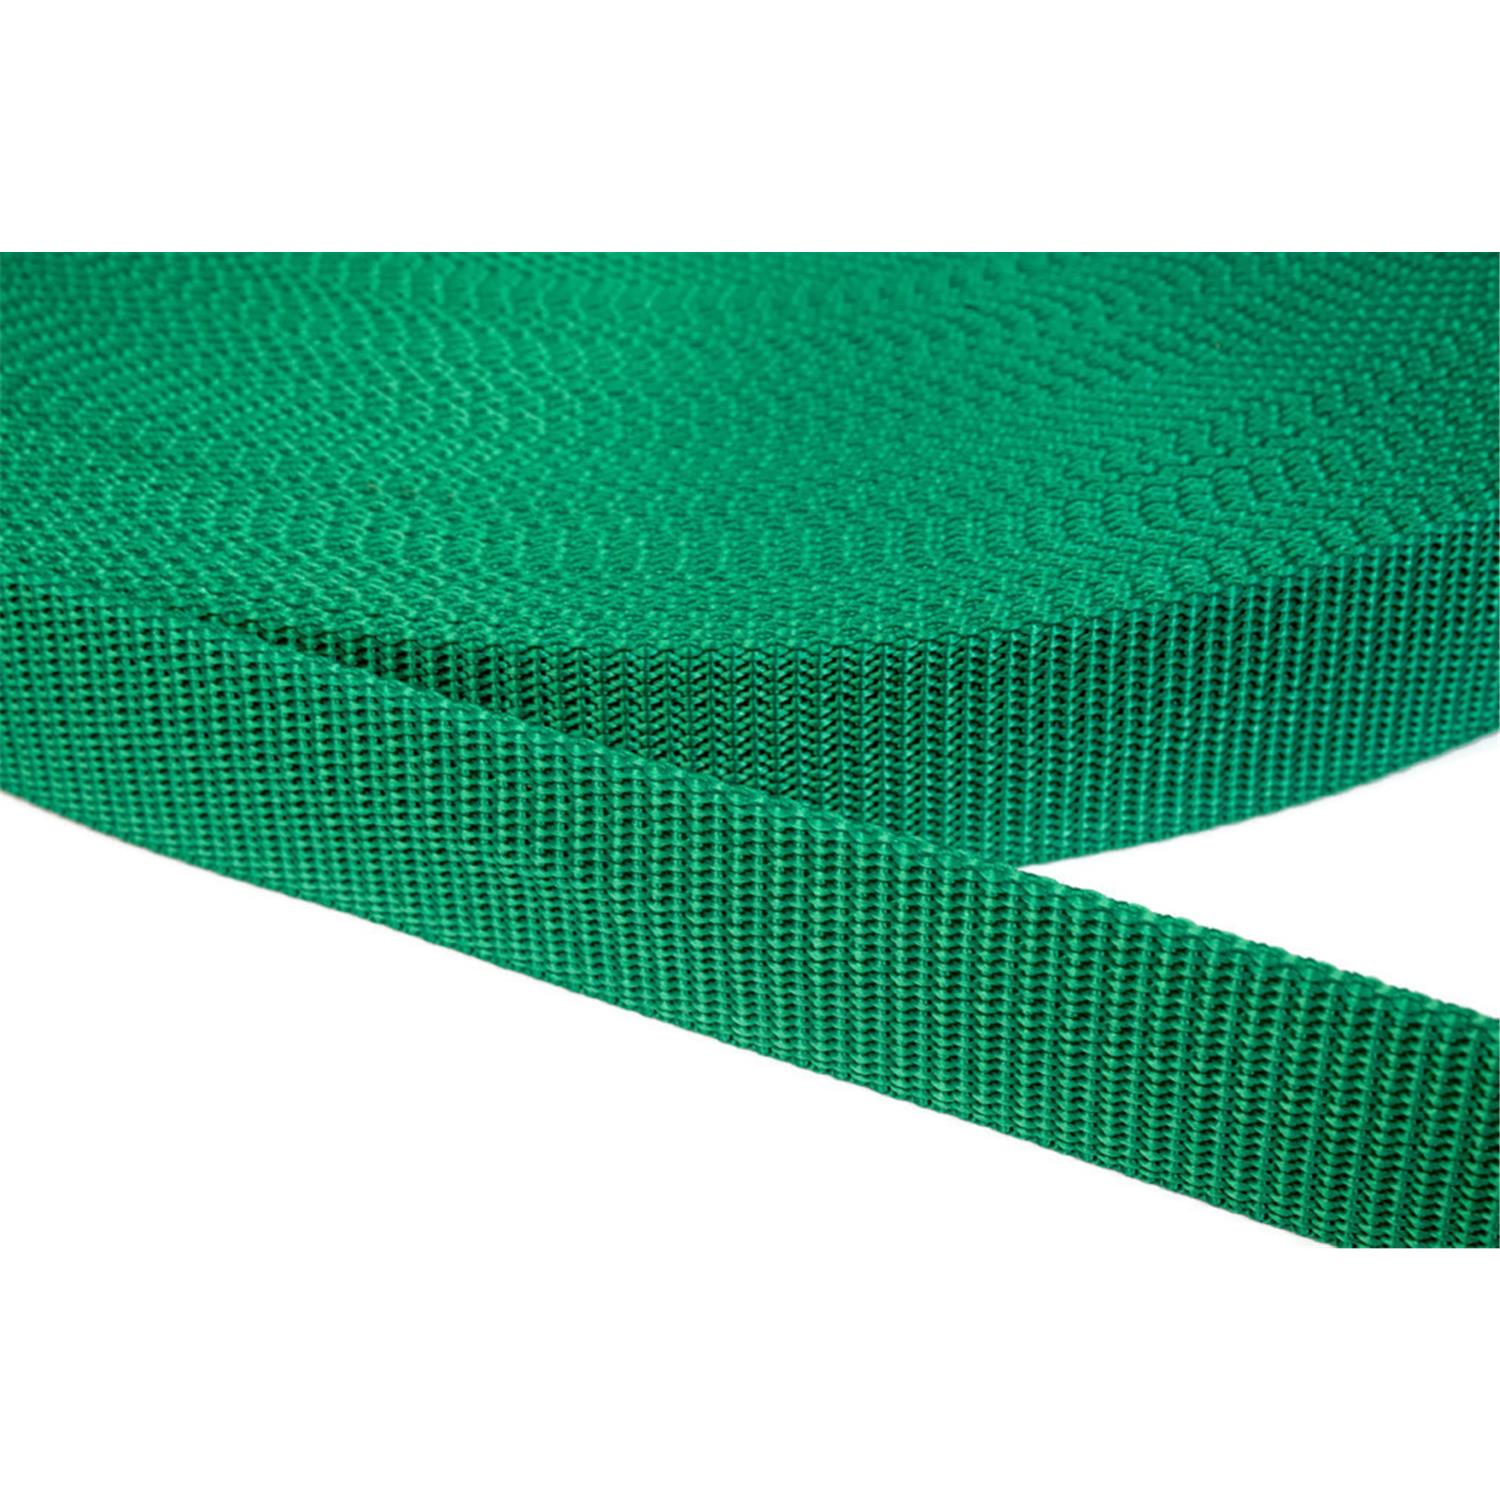 Gurtband 50mm breit aus Polypropylen in 41 Farben 34 - grün 12 Meter